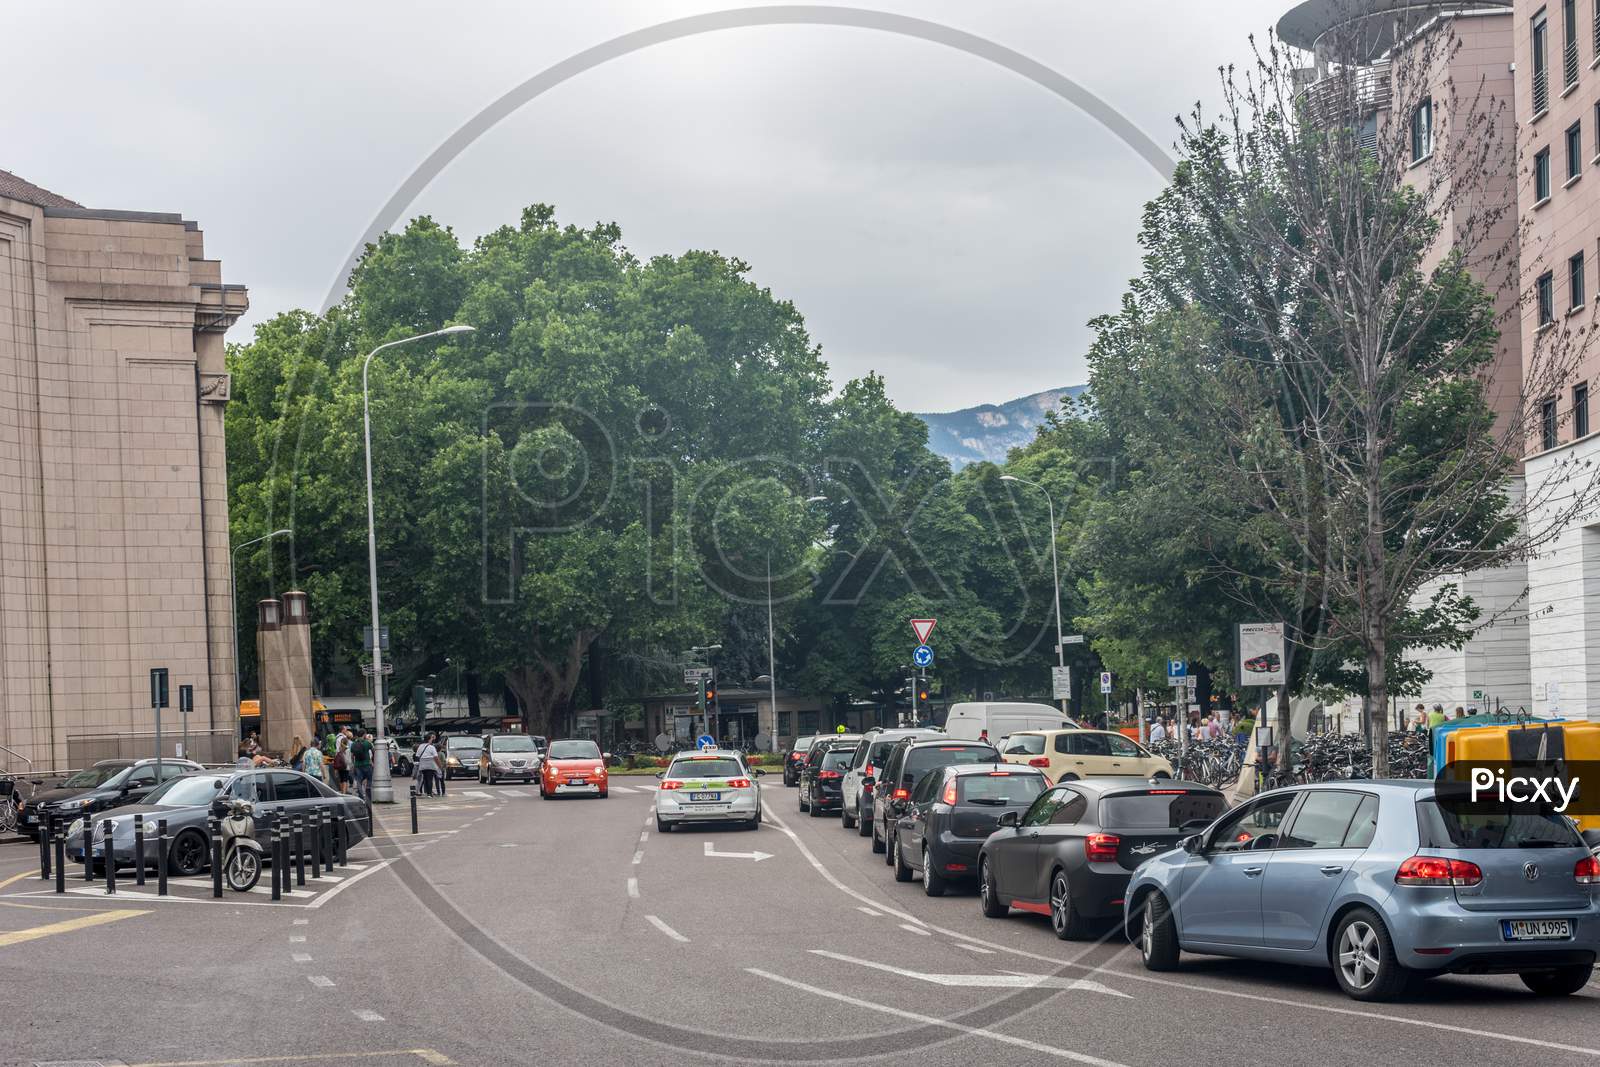 Bolzano, Italy - 28 June 2018: The Traffic On The Streets Of Bolzano, Italy